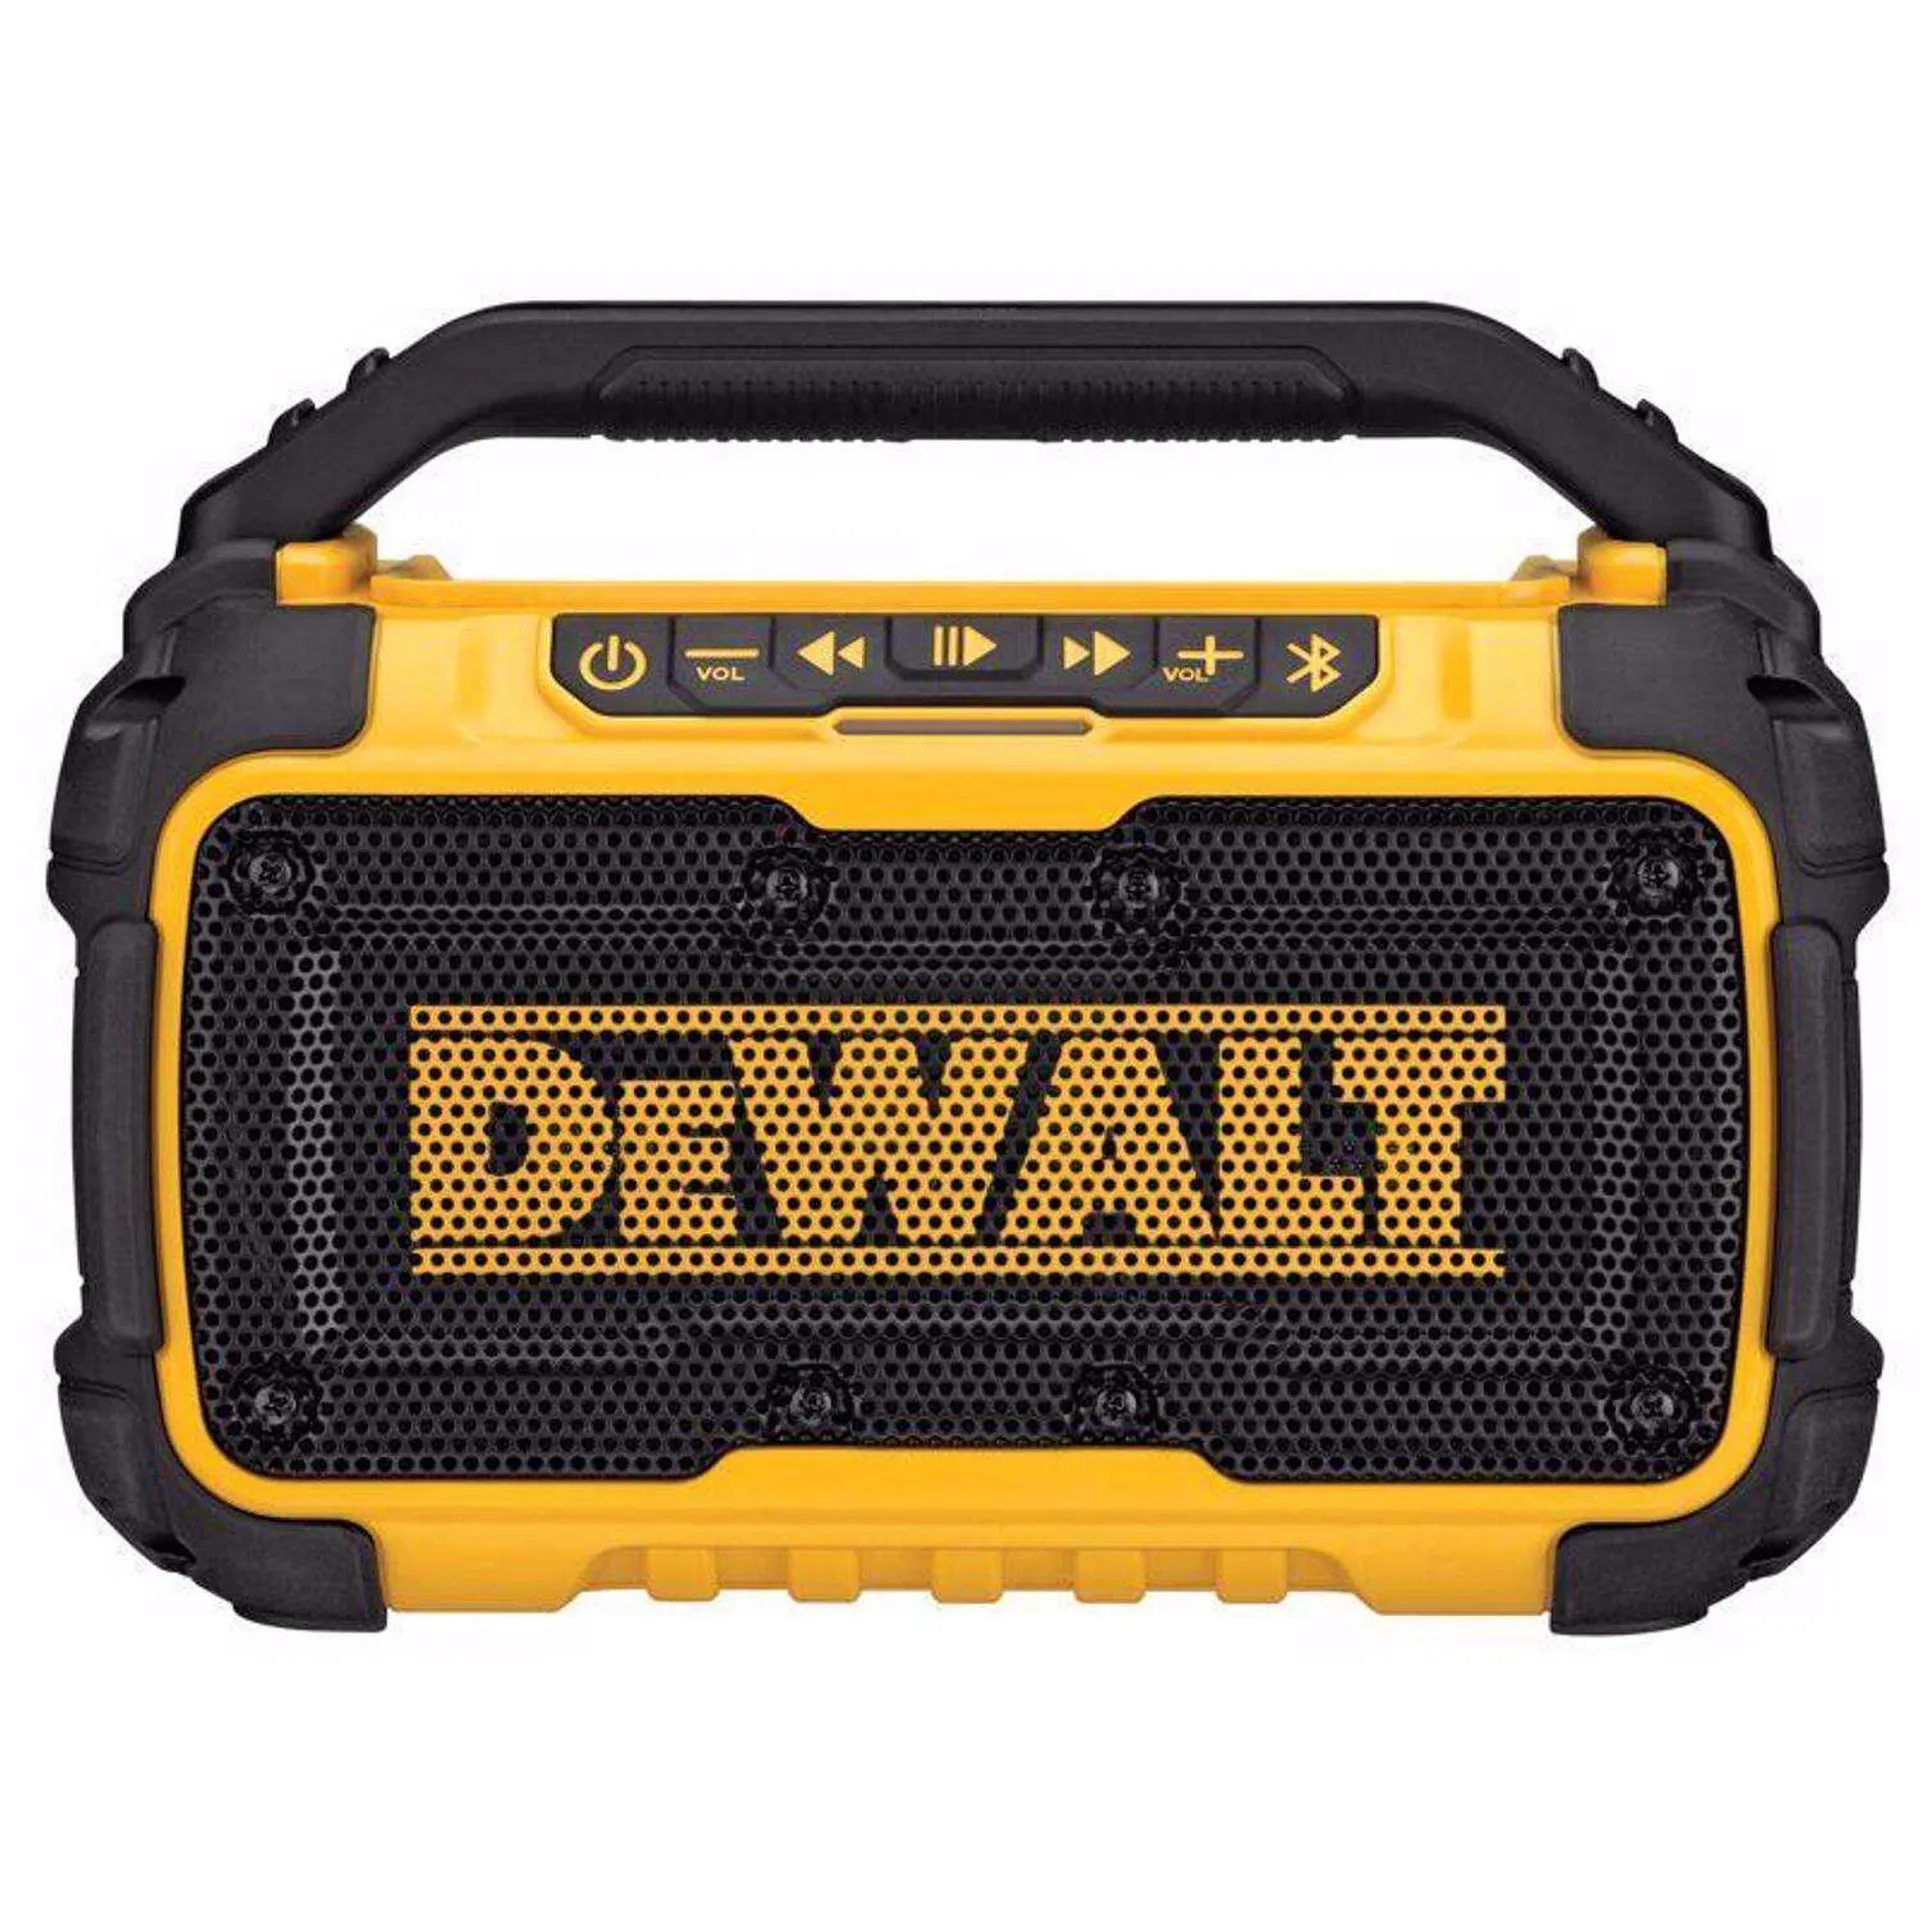 DEWALT 20V MAX DCR010 Lithium-Ion Jobsite Bluetooth Speaker 1 pc